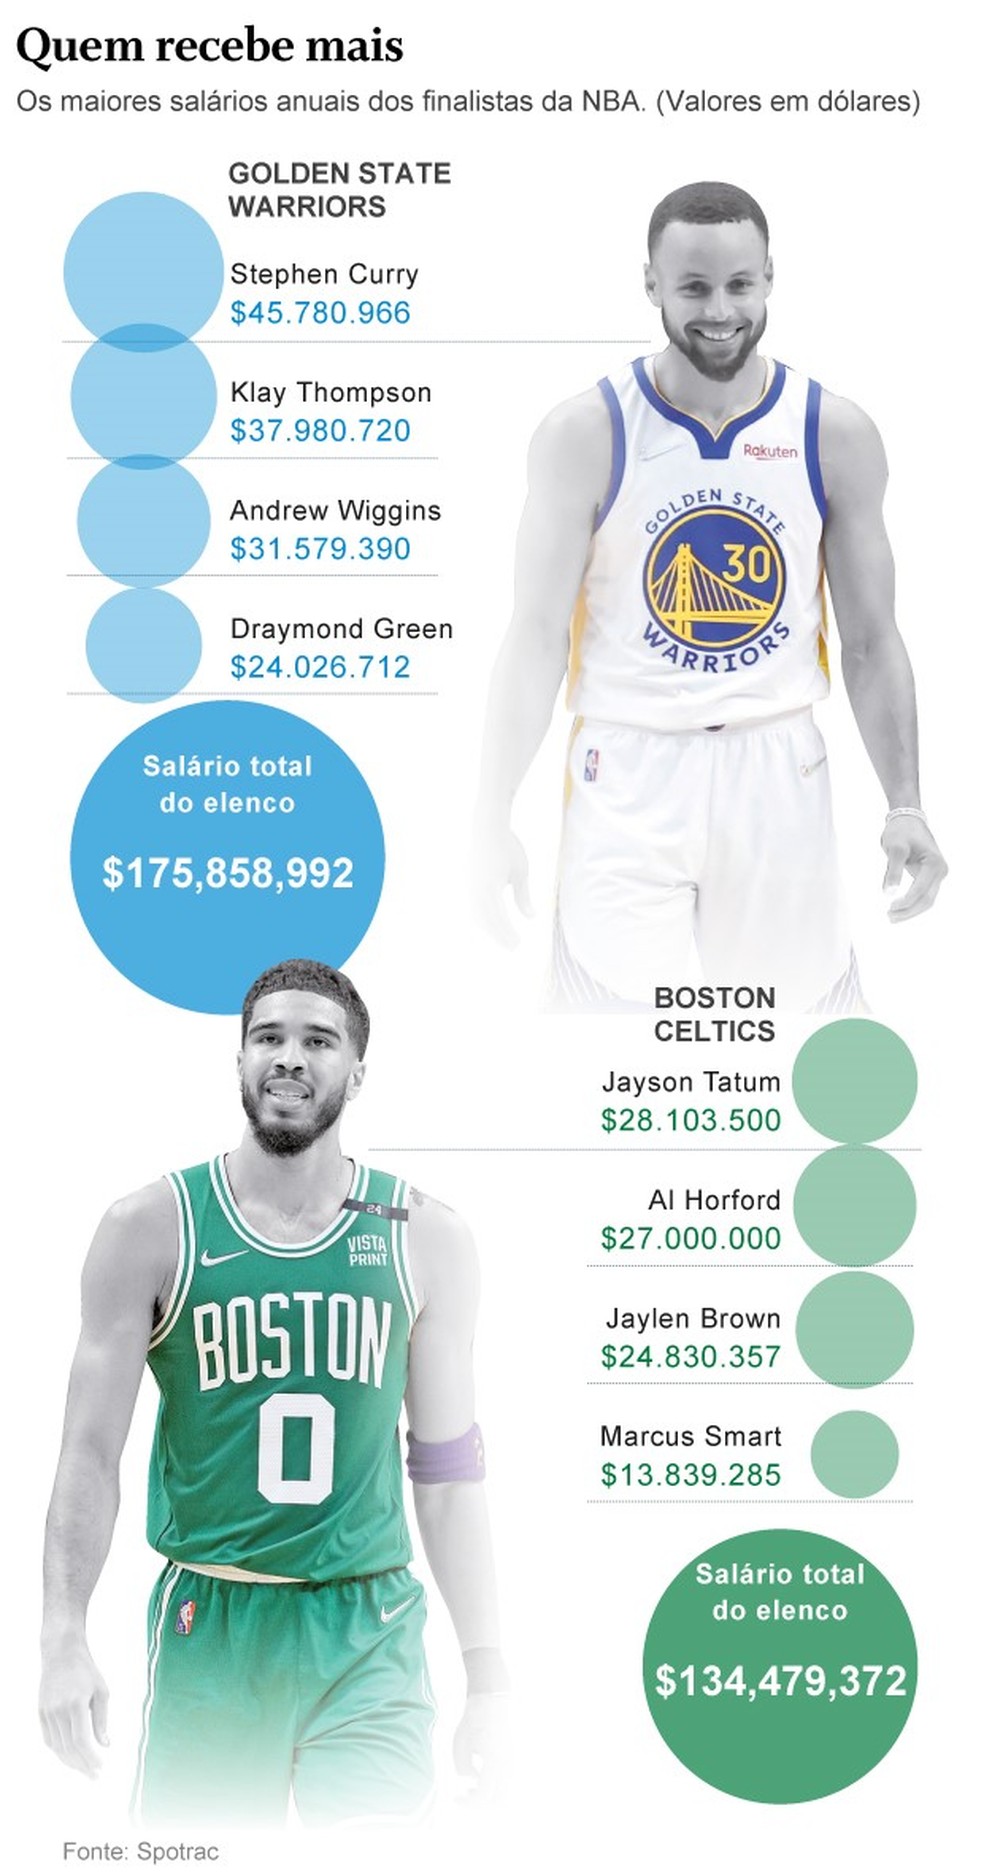 Quais são o maiores salários dos jogadores atuais da NBA?